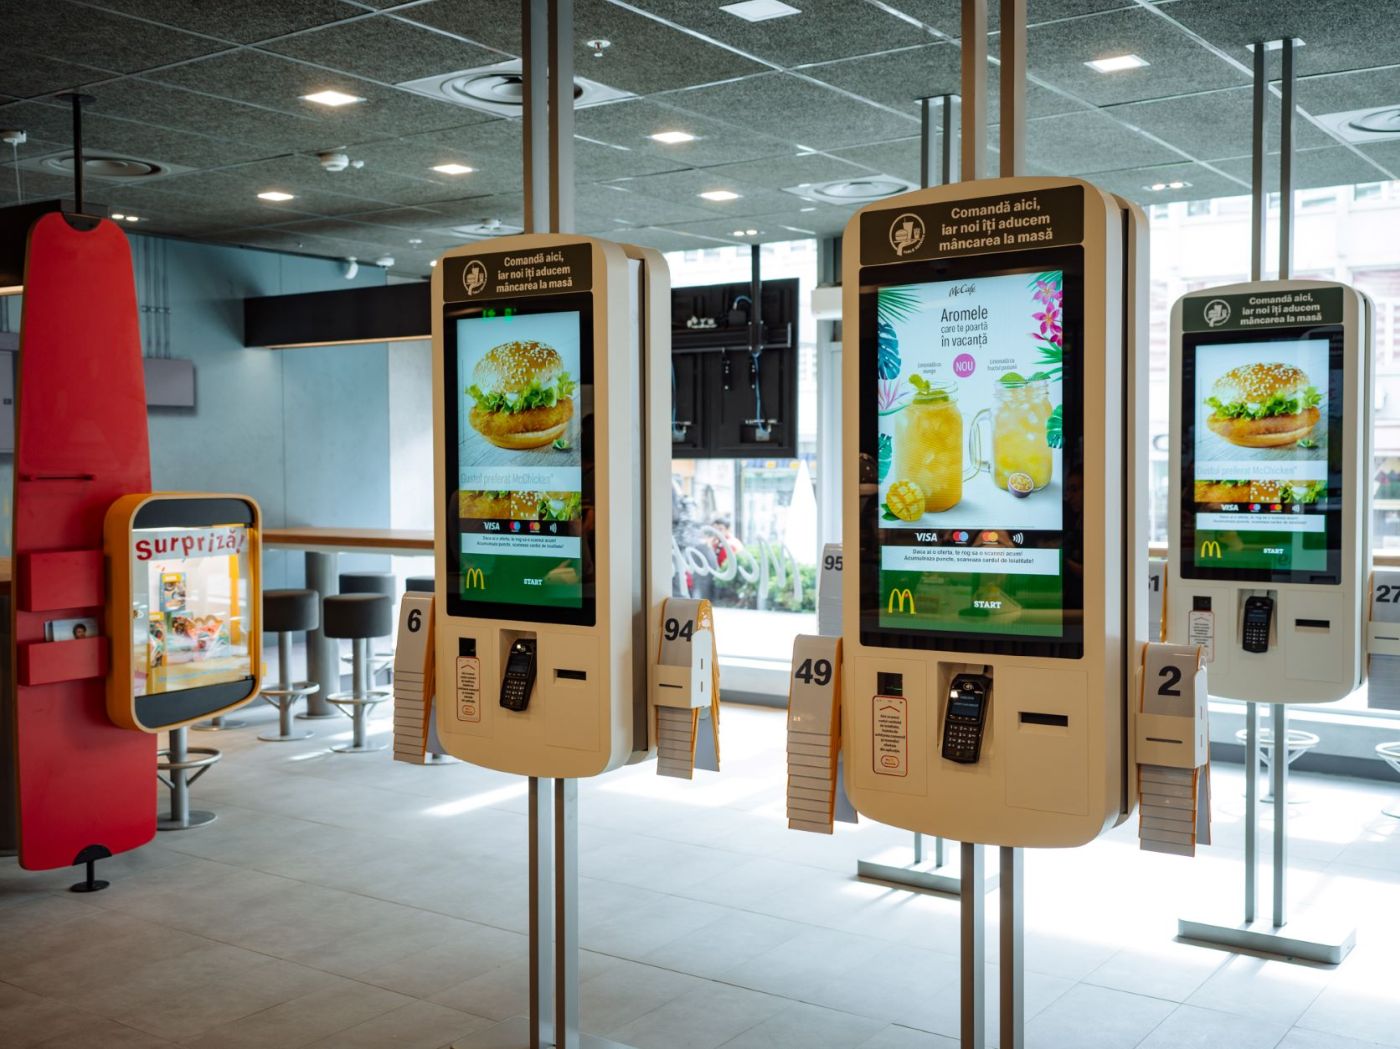 Odată cu modernizarea restaurantului, clienții pot beneficia de produsele preferate de la McCafé, precum și de noul sistem digital pentru comenzi rapide